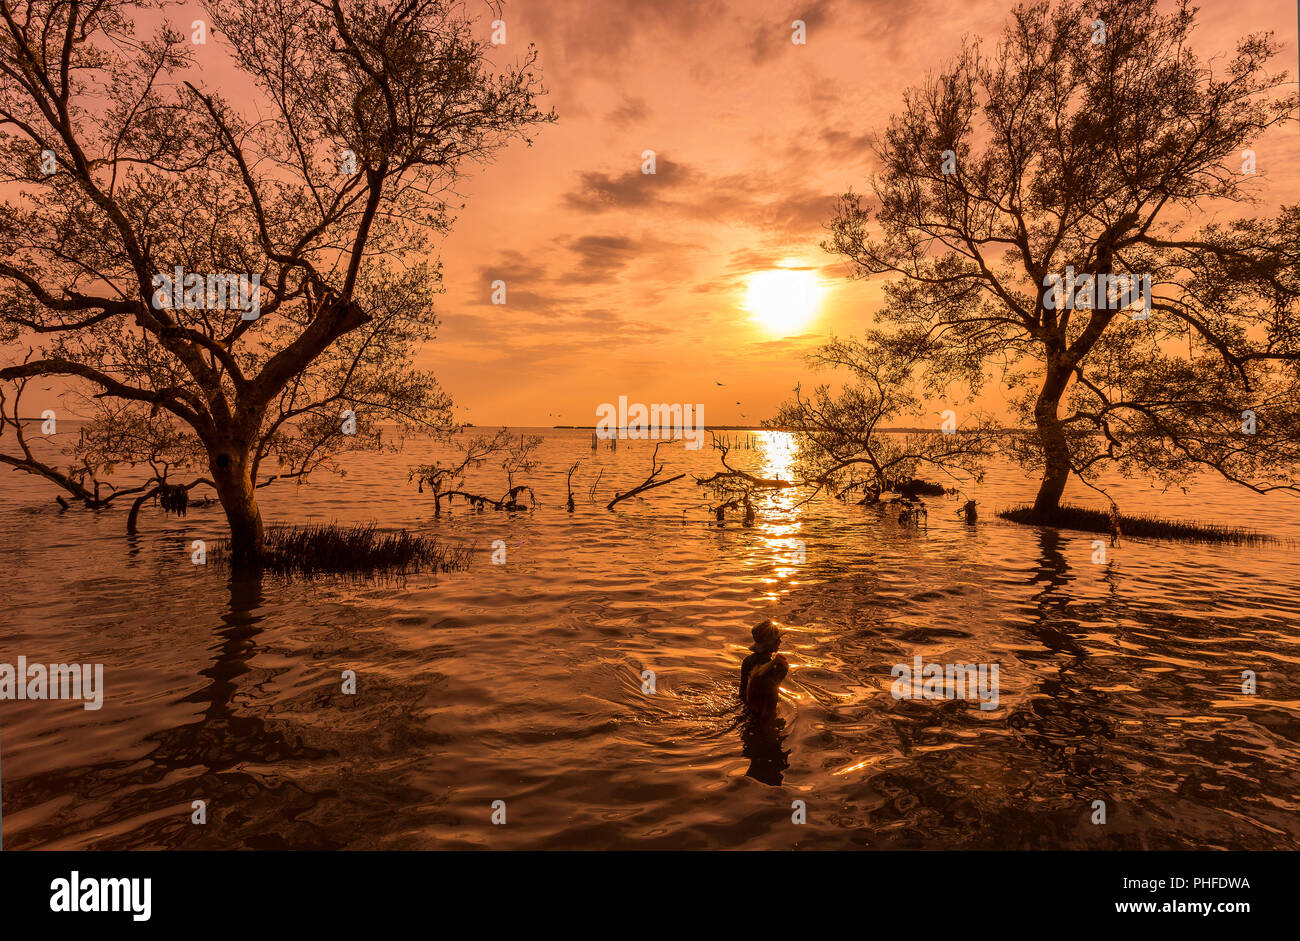 De grands arbres sur l'eau quand lever/coucher de soleil avec la forêt de mangrove au pêcheur sur la Thai tropical bay mer belle nature background Banque D'Images